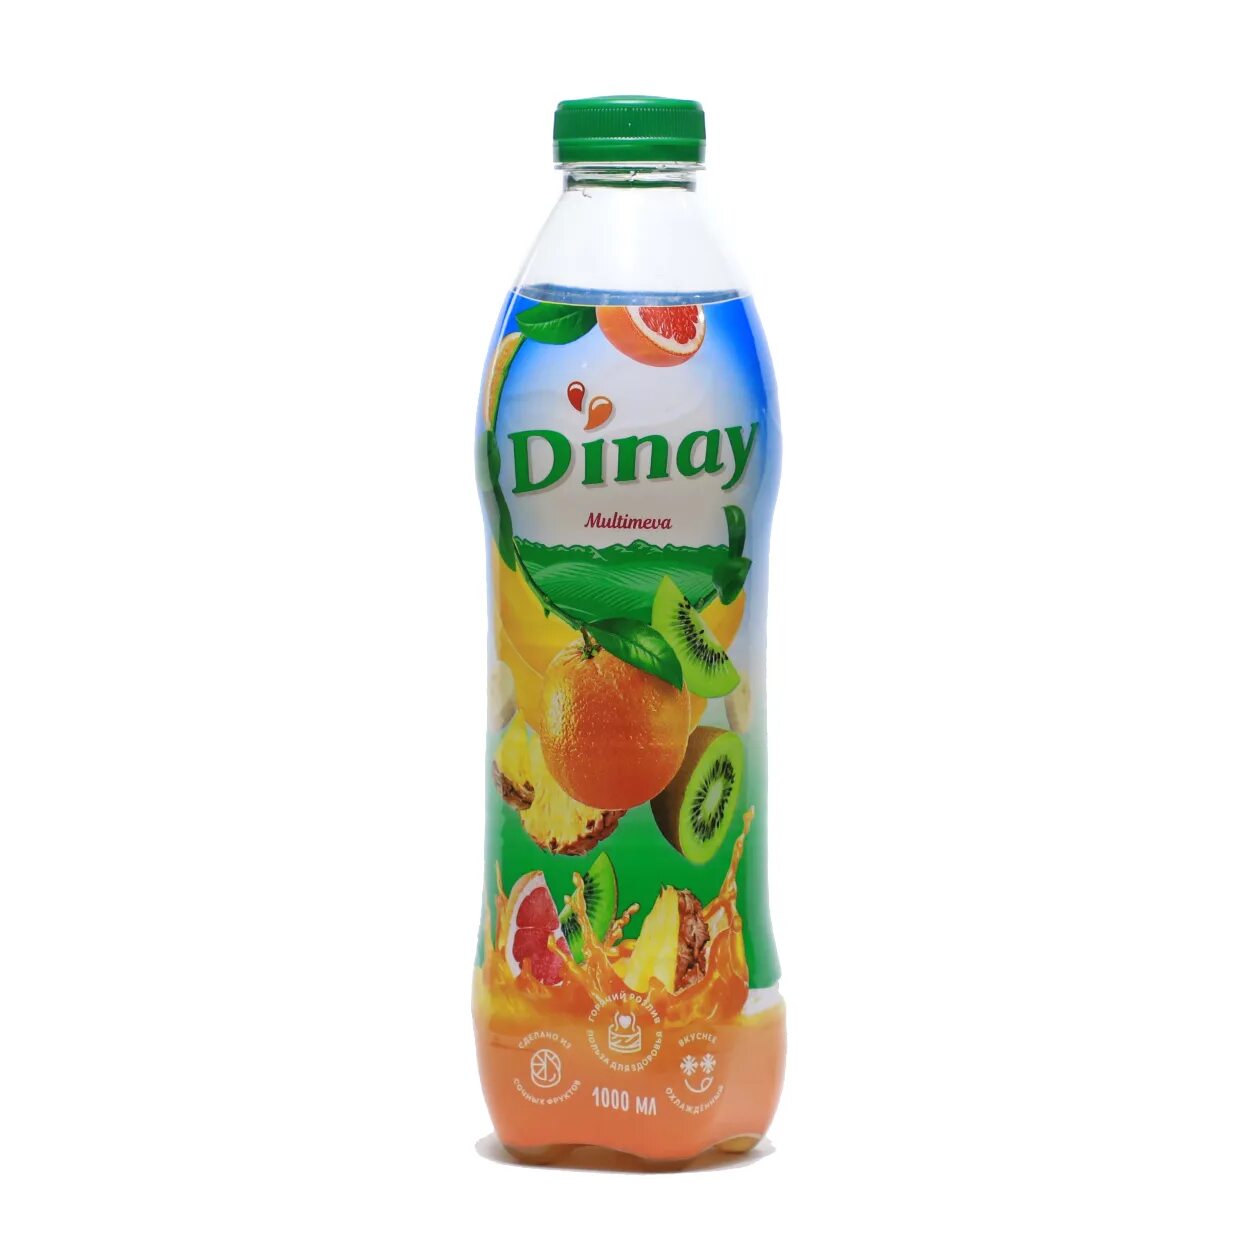 Dinay сок. Динай напиток. Гринлайн напиток. Dinay Gyu. Pat 8